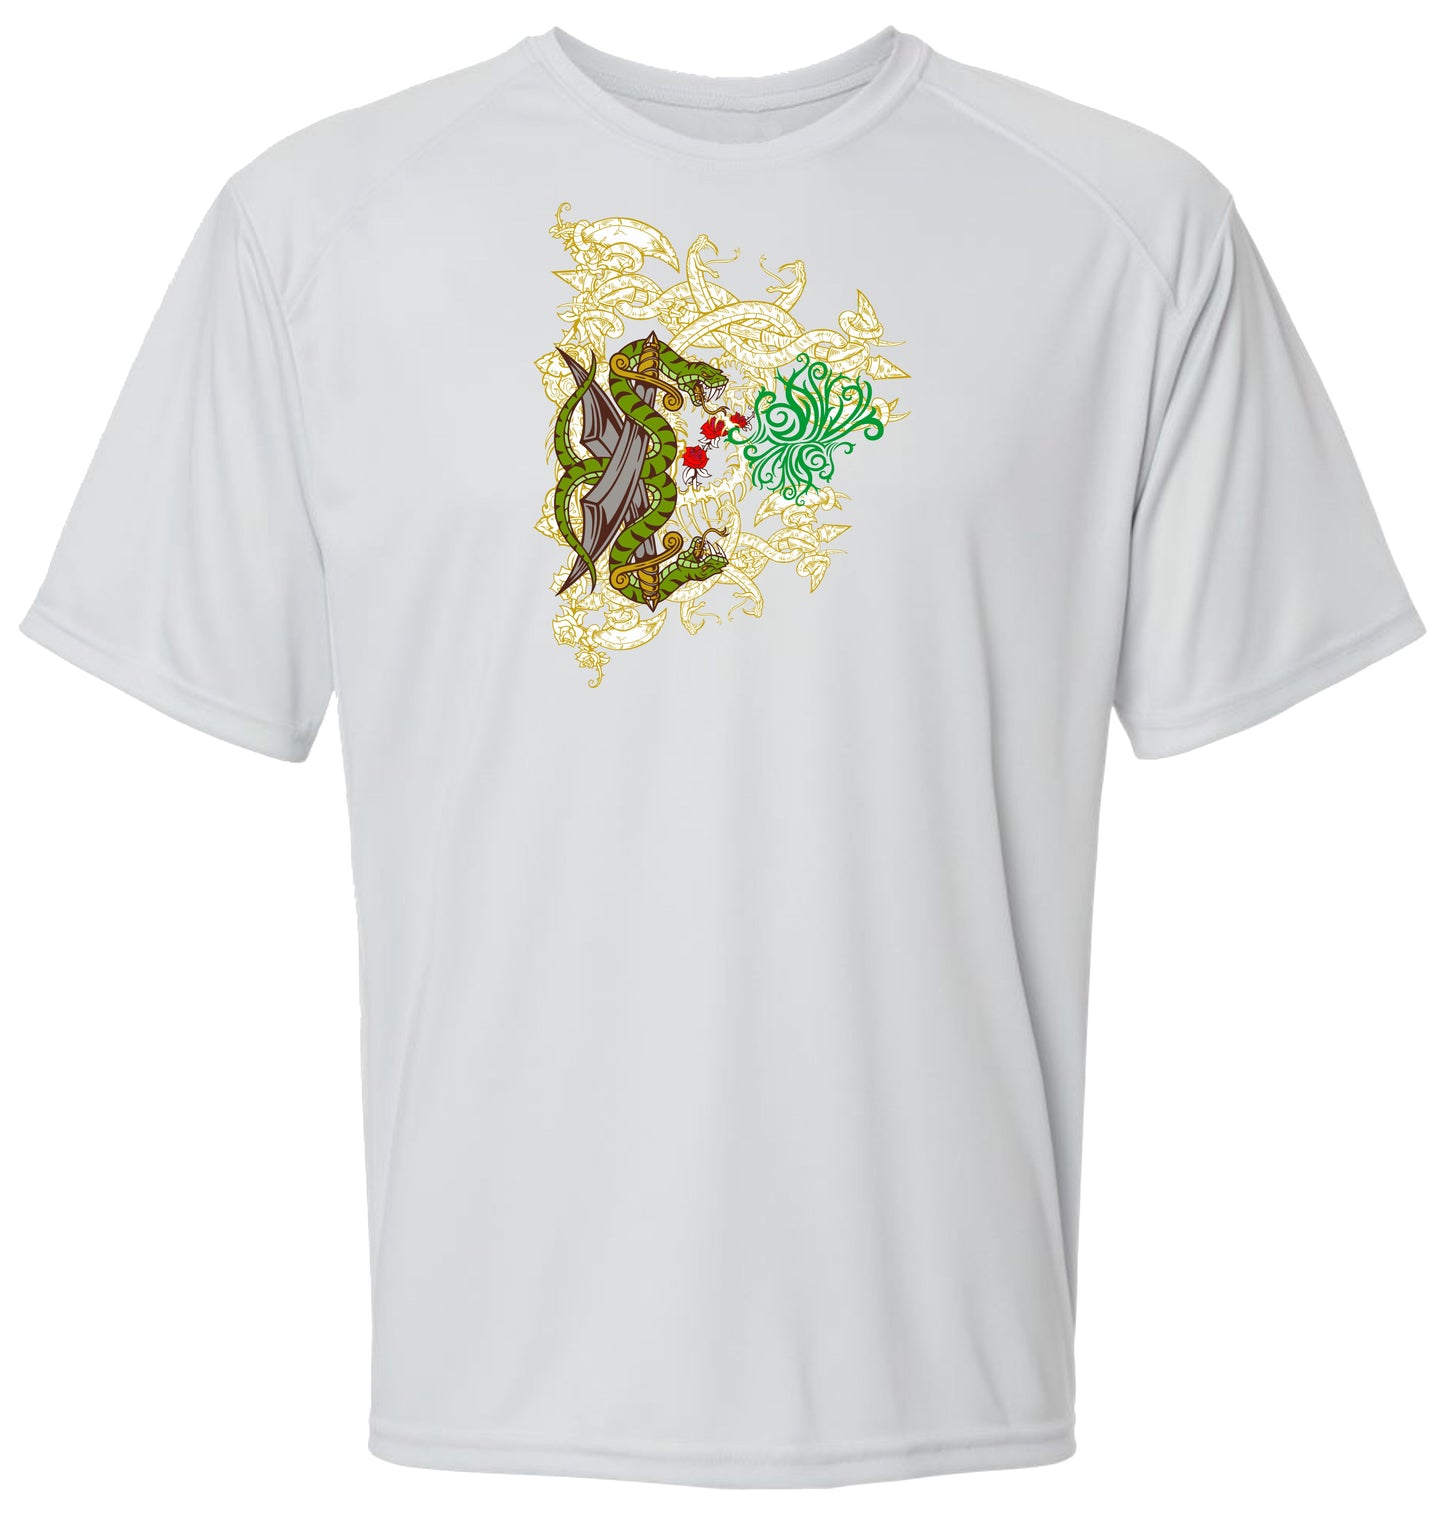 99 SM Snakes Short Sleeve UPF 50+ Shirt Wildlife Shirt Biker Shirt Outdoor Shirt Lake Shirt Beach Shirt Outdoor Shirt